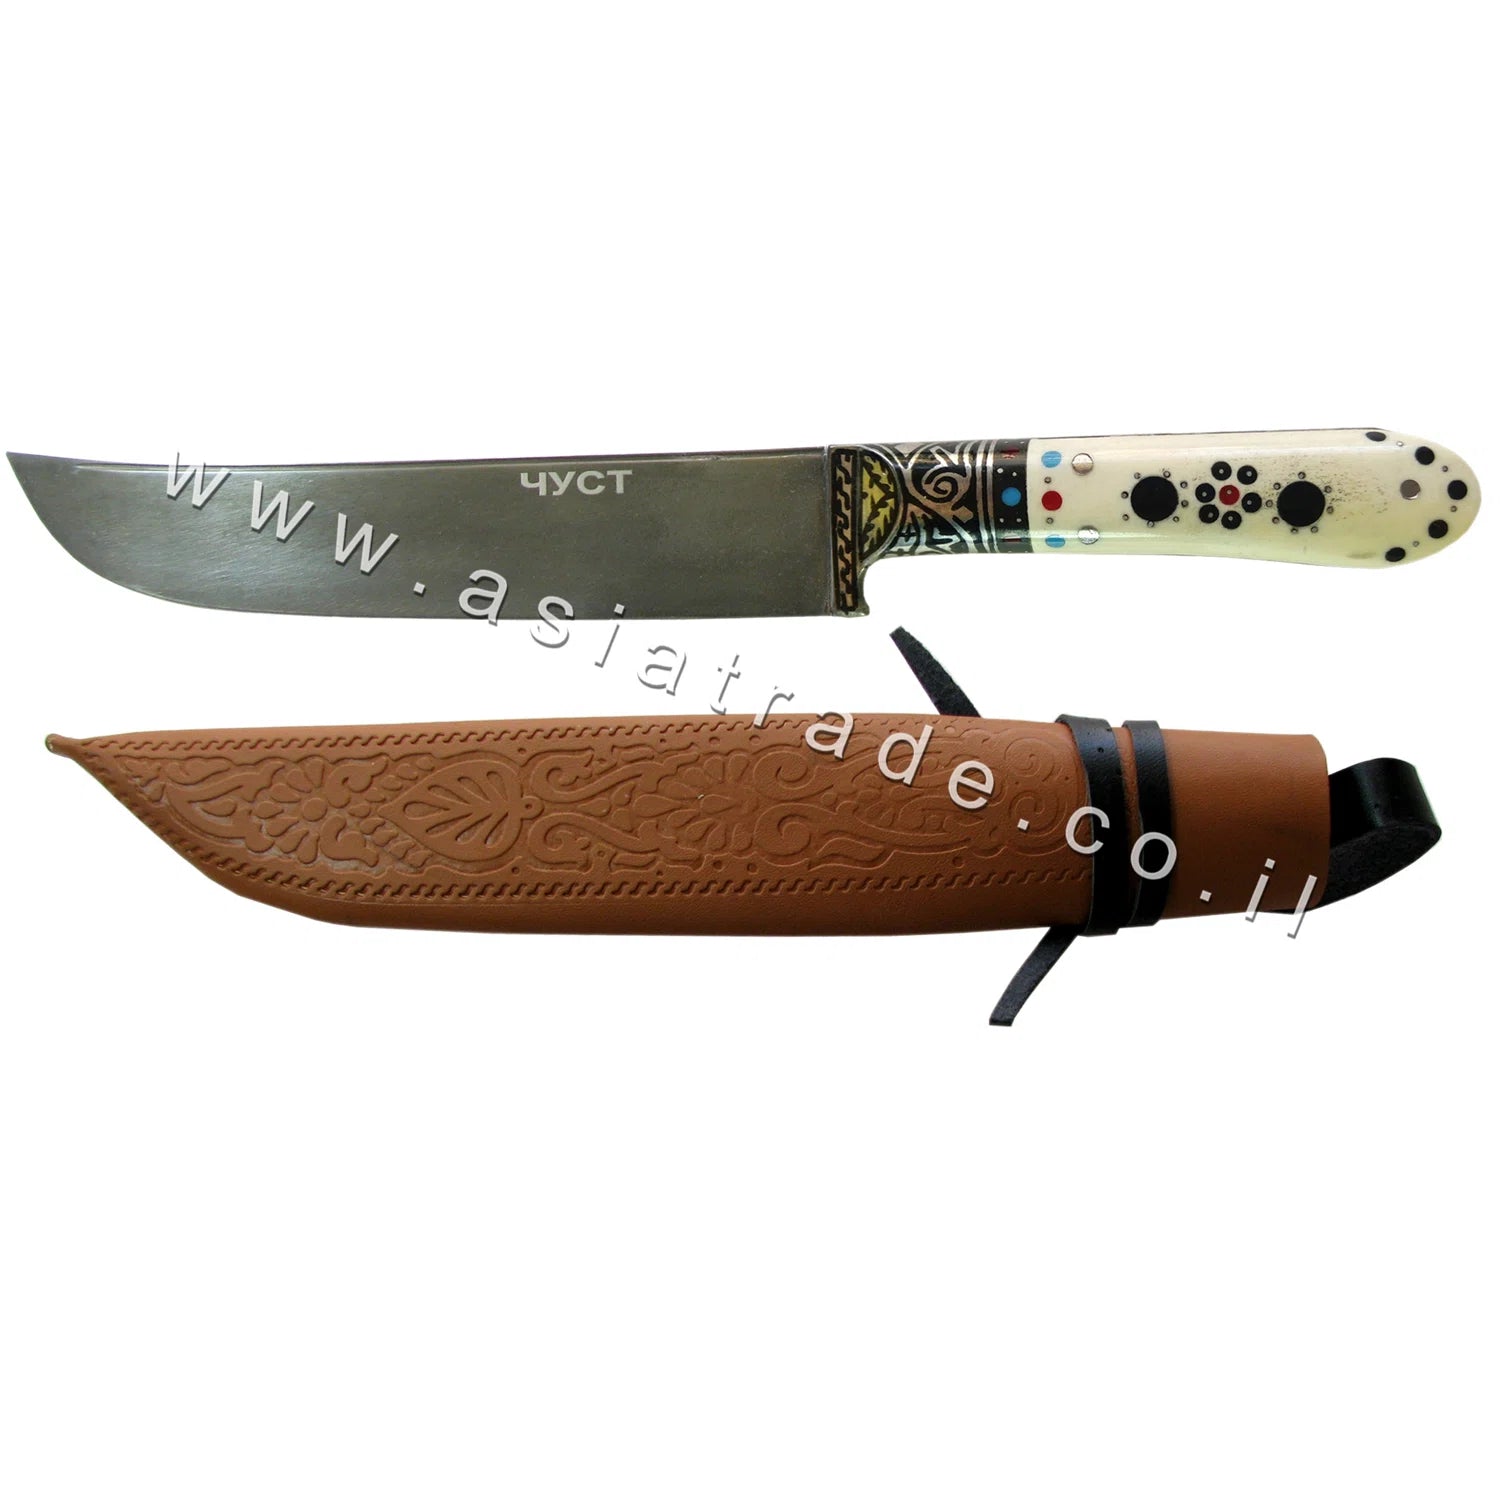 Узбекский нож ручной работы, Пчак - CHUST 1113 